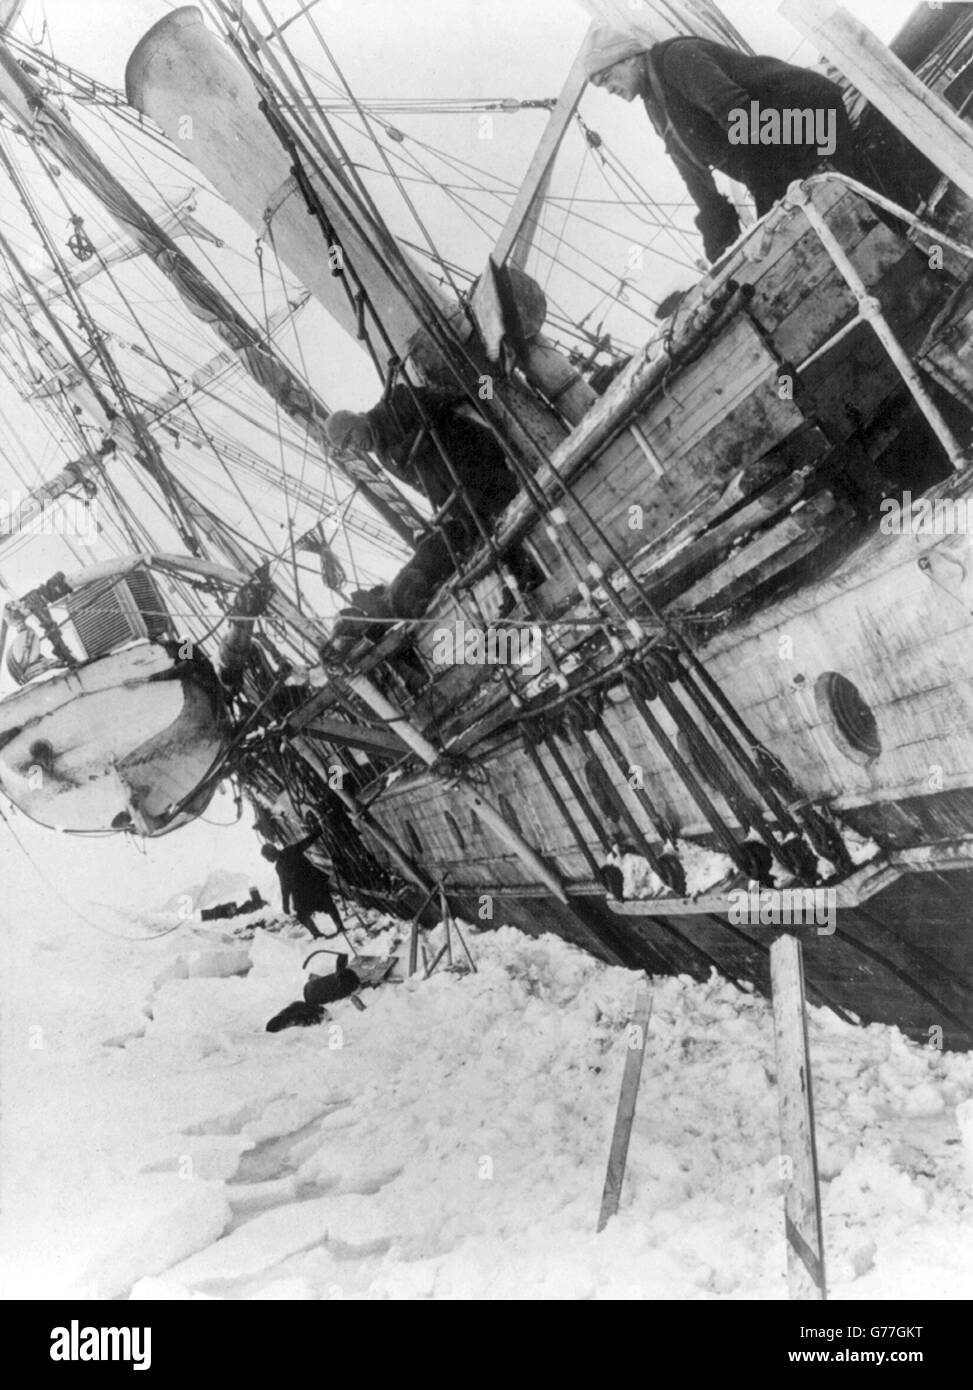 Ernest Shackleton, l'Endurance. Le navire de Sir Ernest Shackleton, l'Endurance, pris dans les glaces au cours de l'Expédition transantarctique impériale 1914/15. Banque D'Images